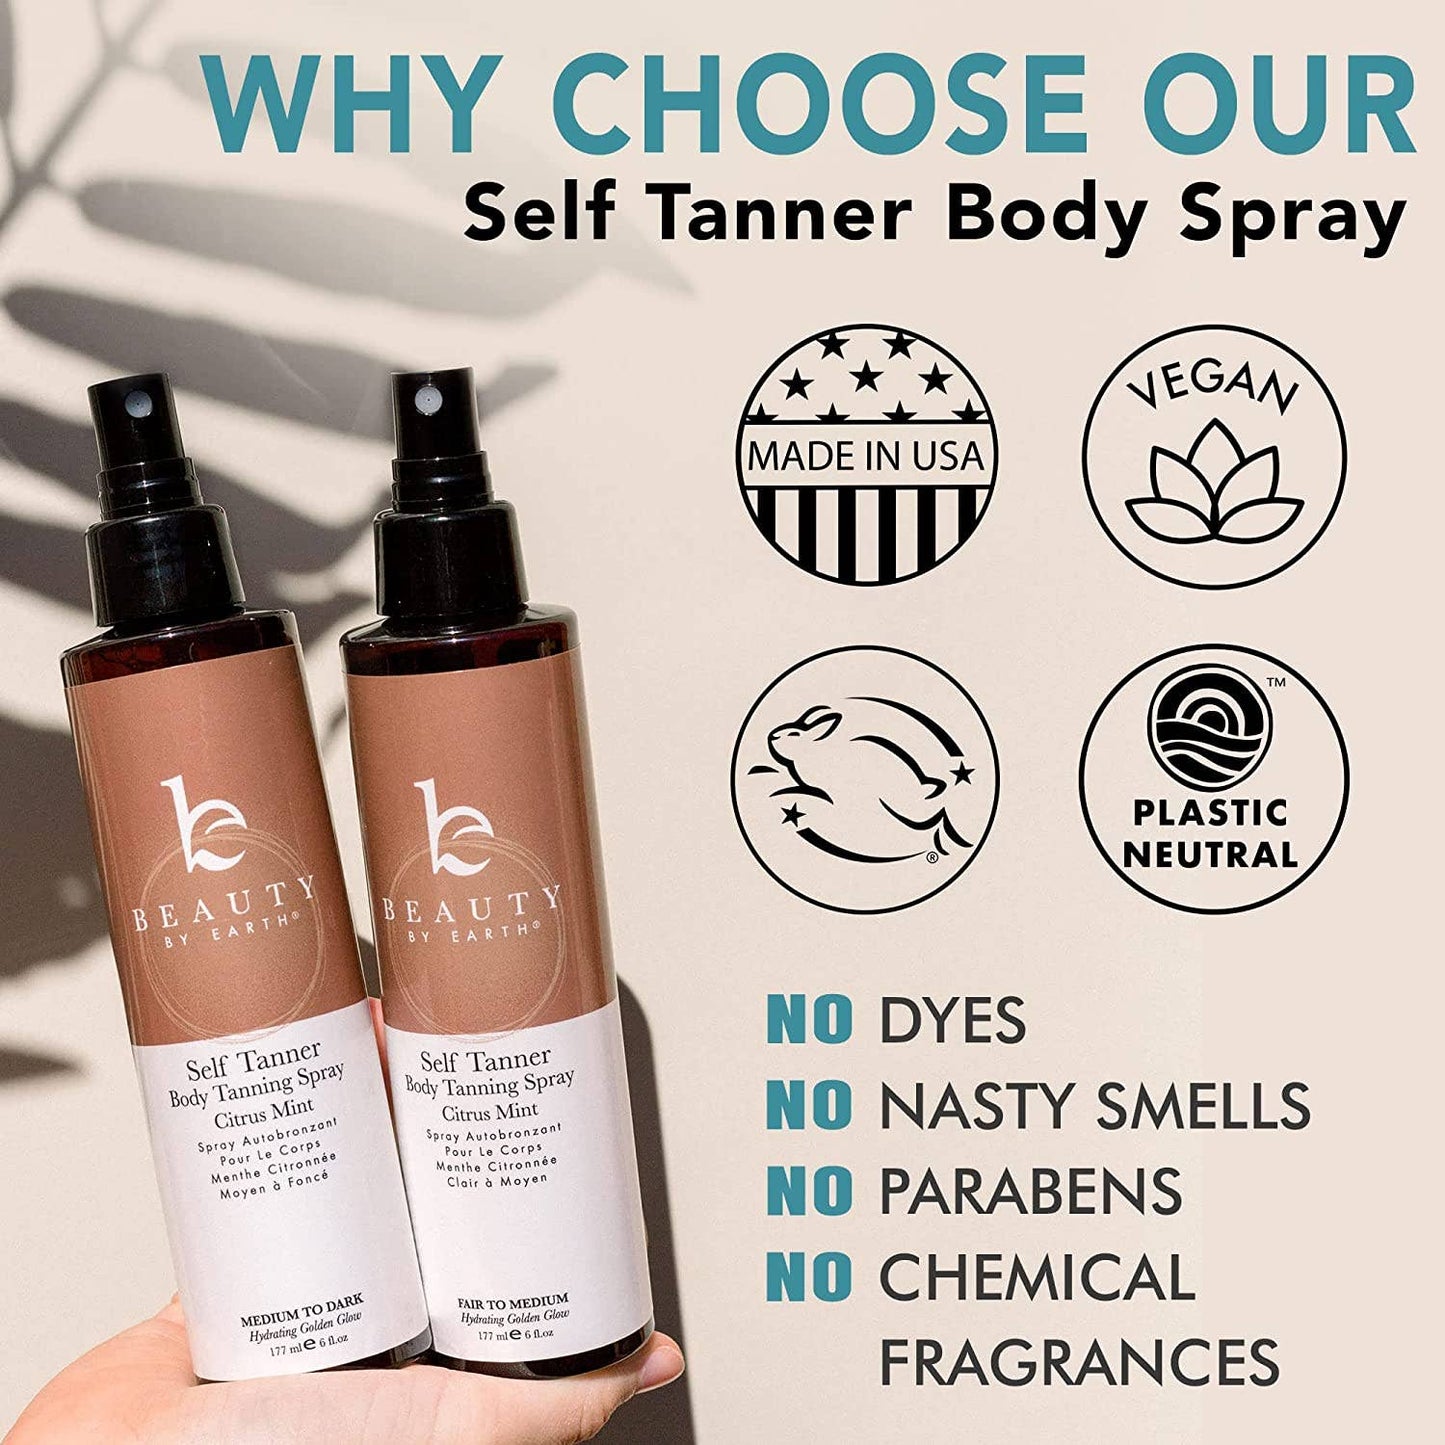 Self Tanner Body Spray